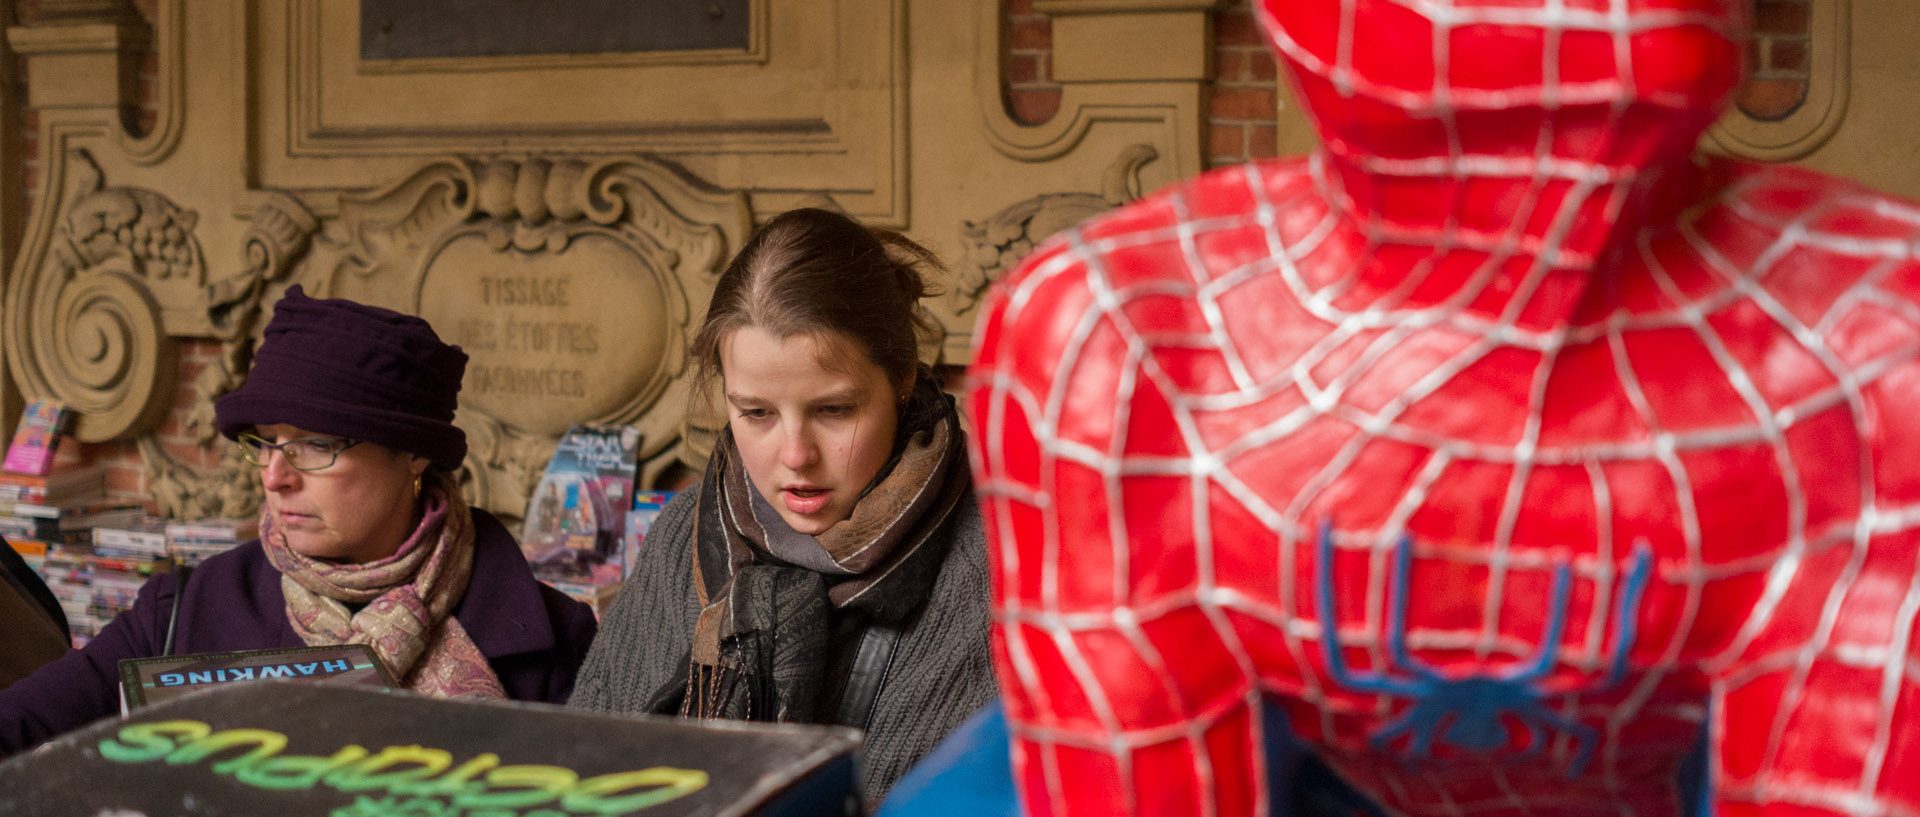 L'univers de Spiderman, vieille bourse, à Lille.